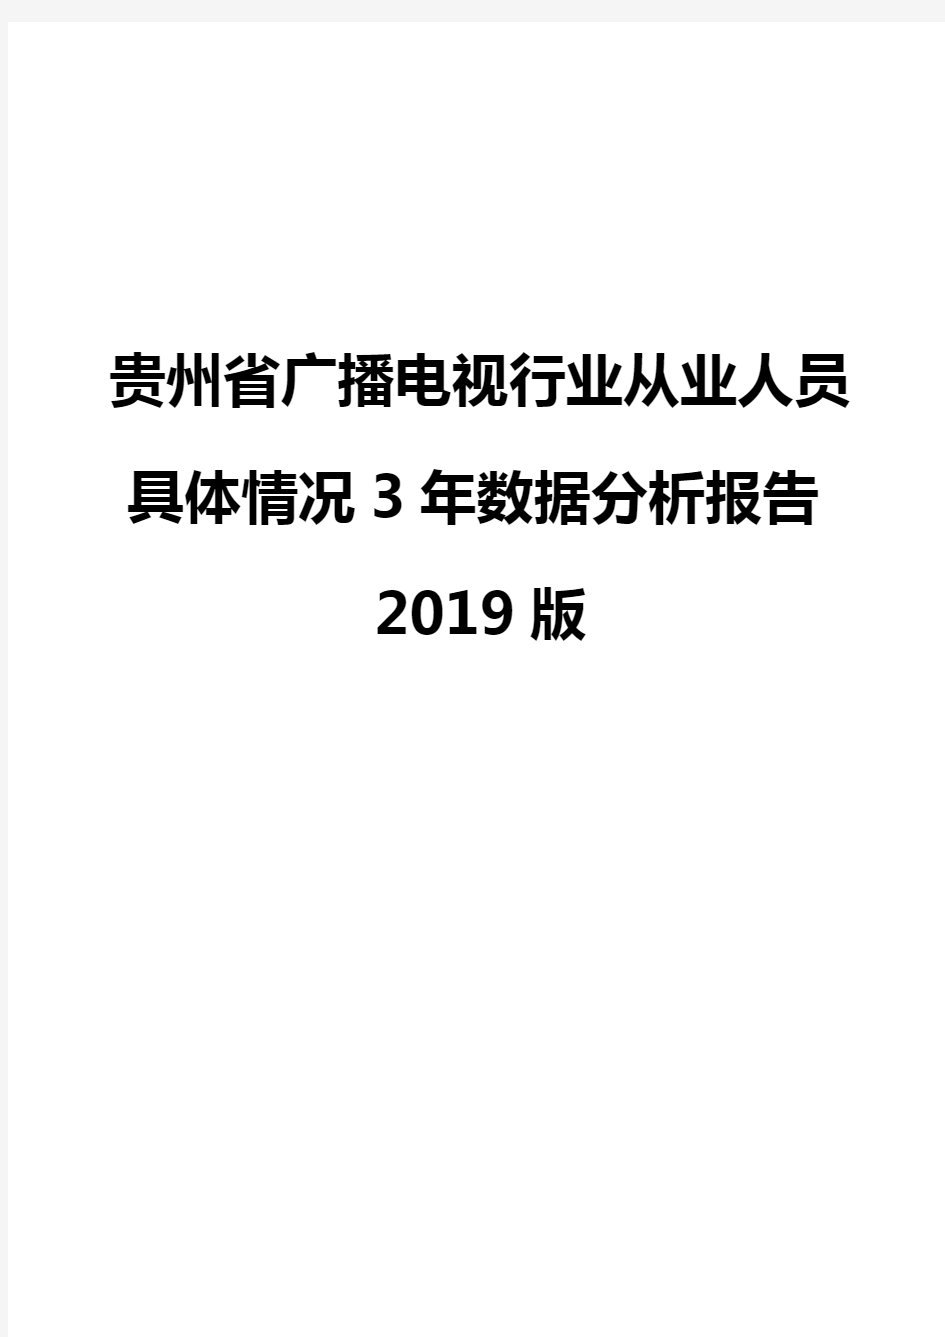 贵州省广播电视行业从业人员具体情况3年数据分析报告2019版